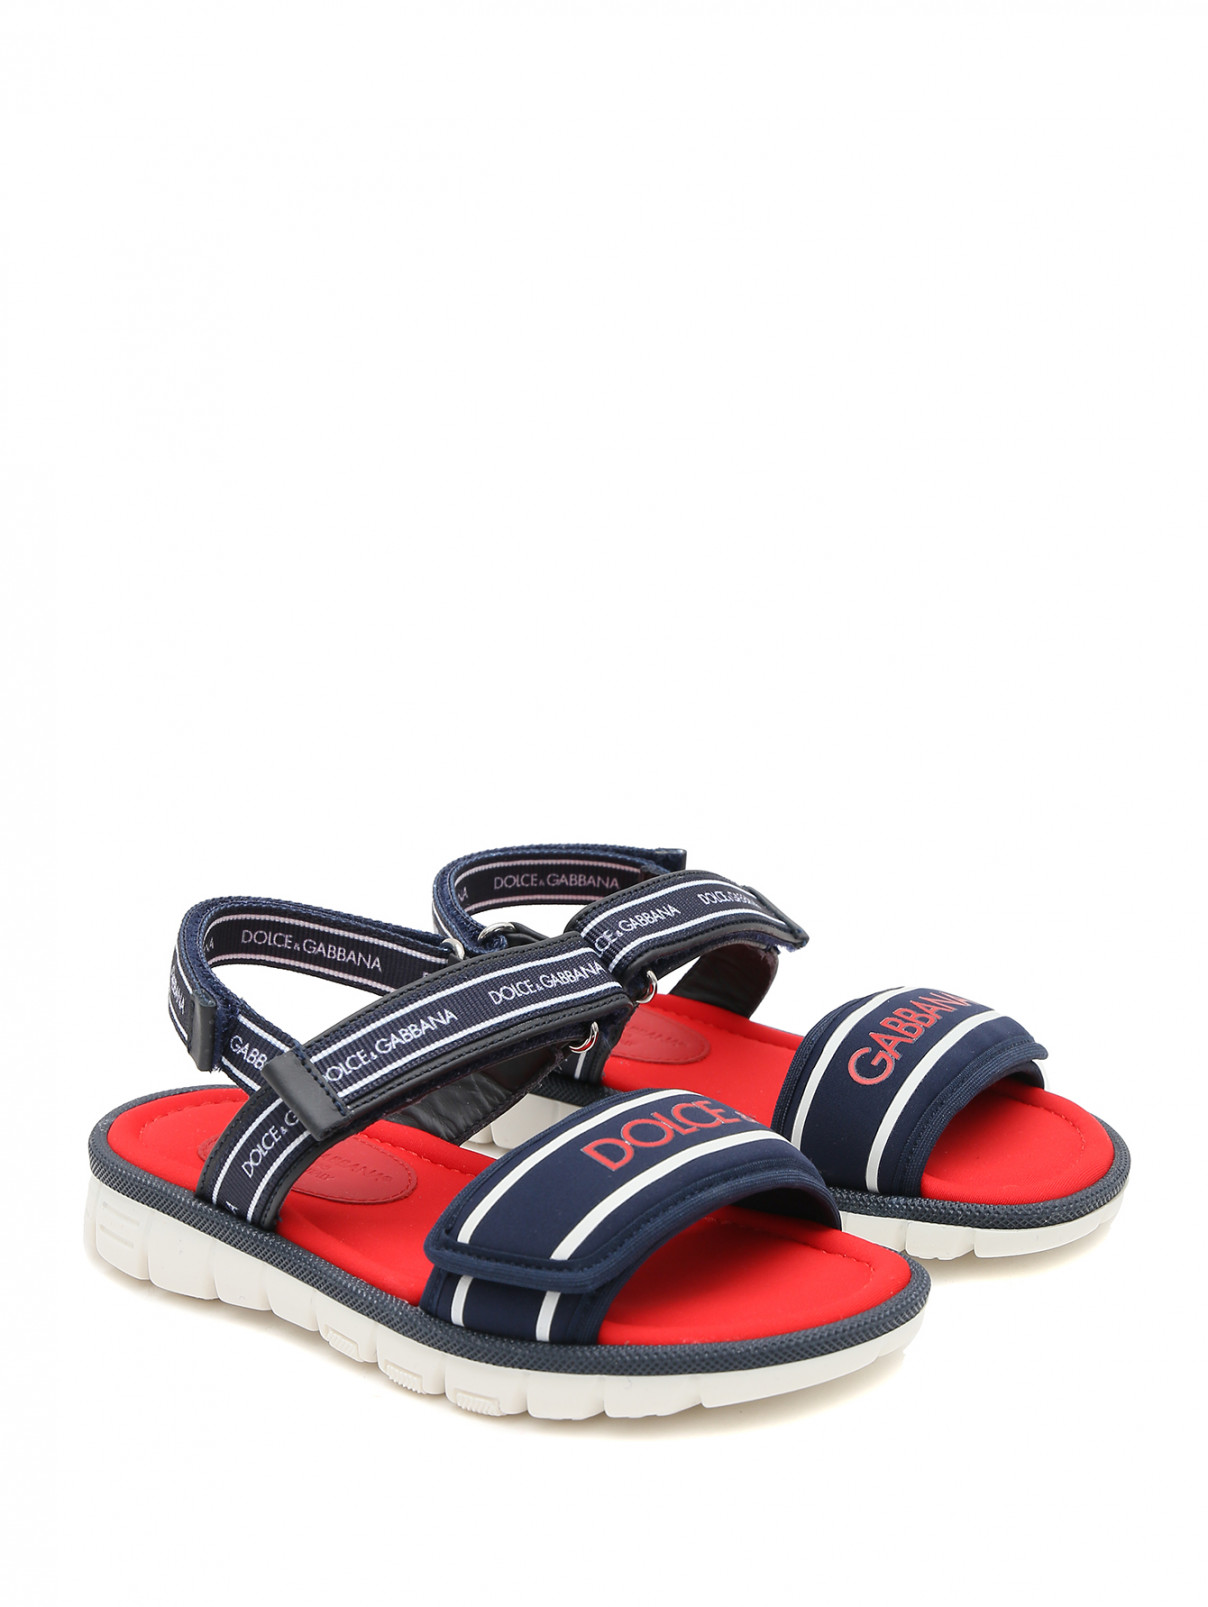 Текстильные сандалии на рефленой подошве Dolce & Gabbana  –  Общий вид  – Цвет:  Синий